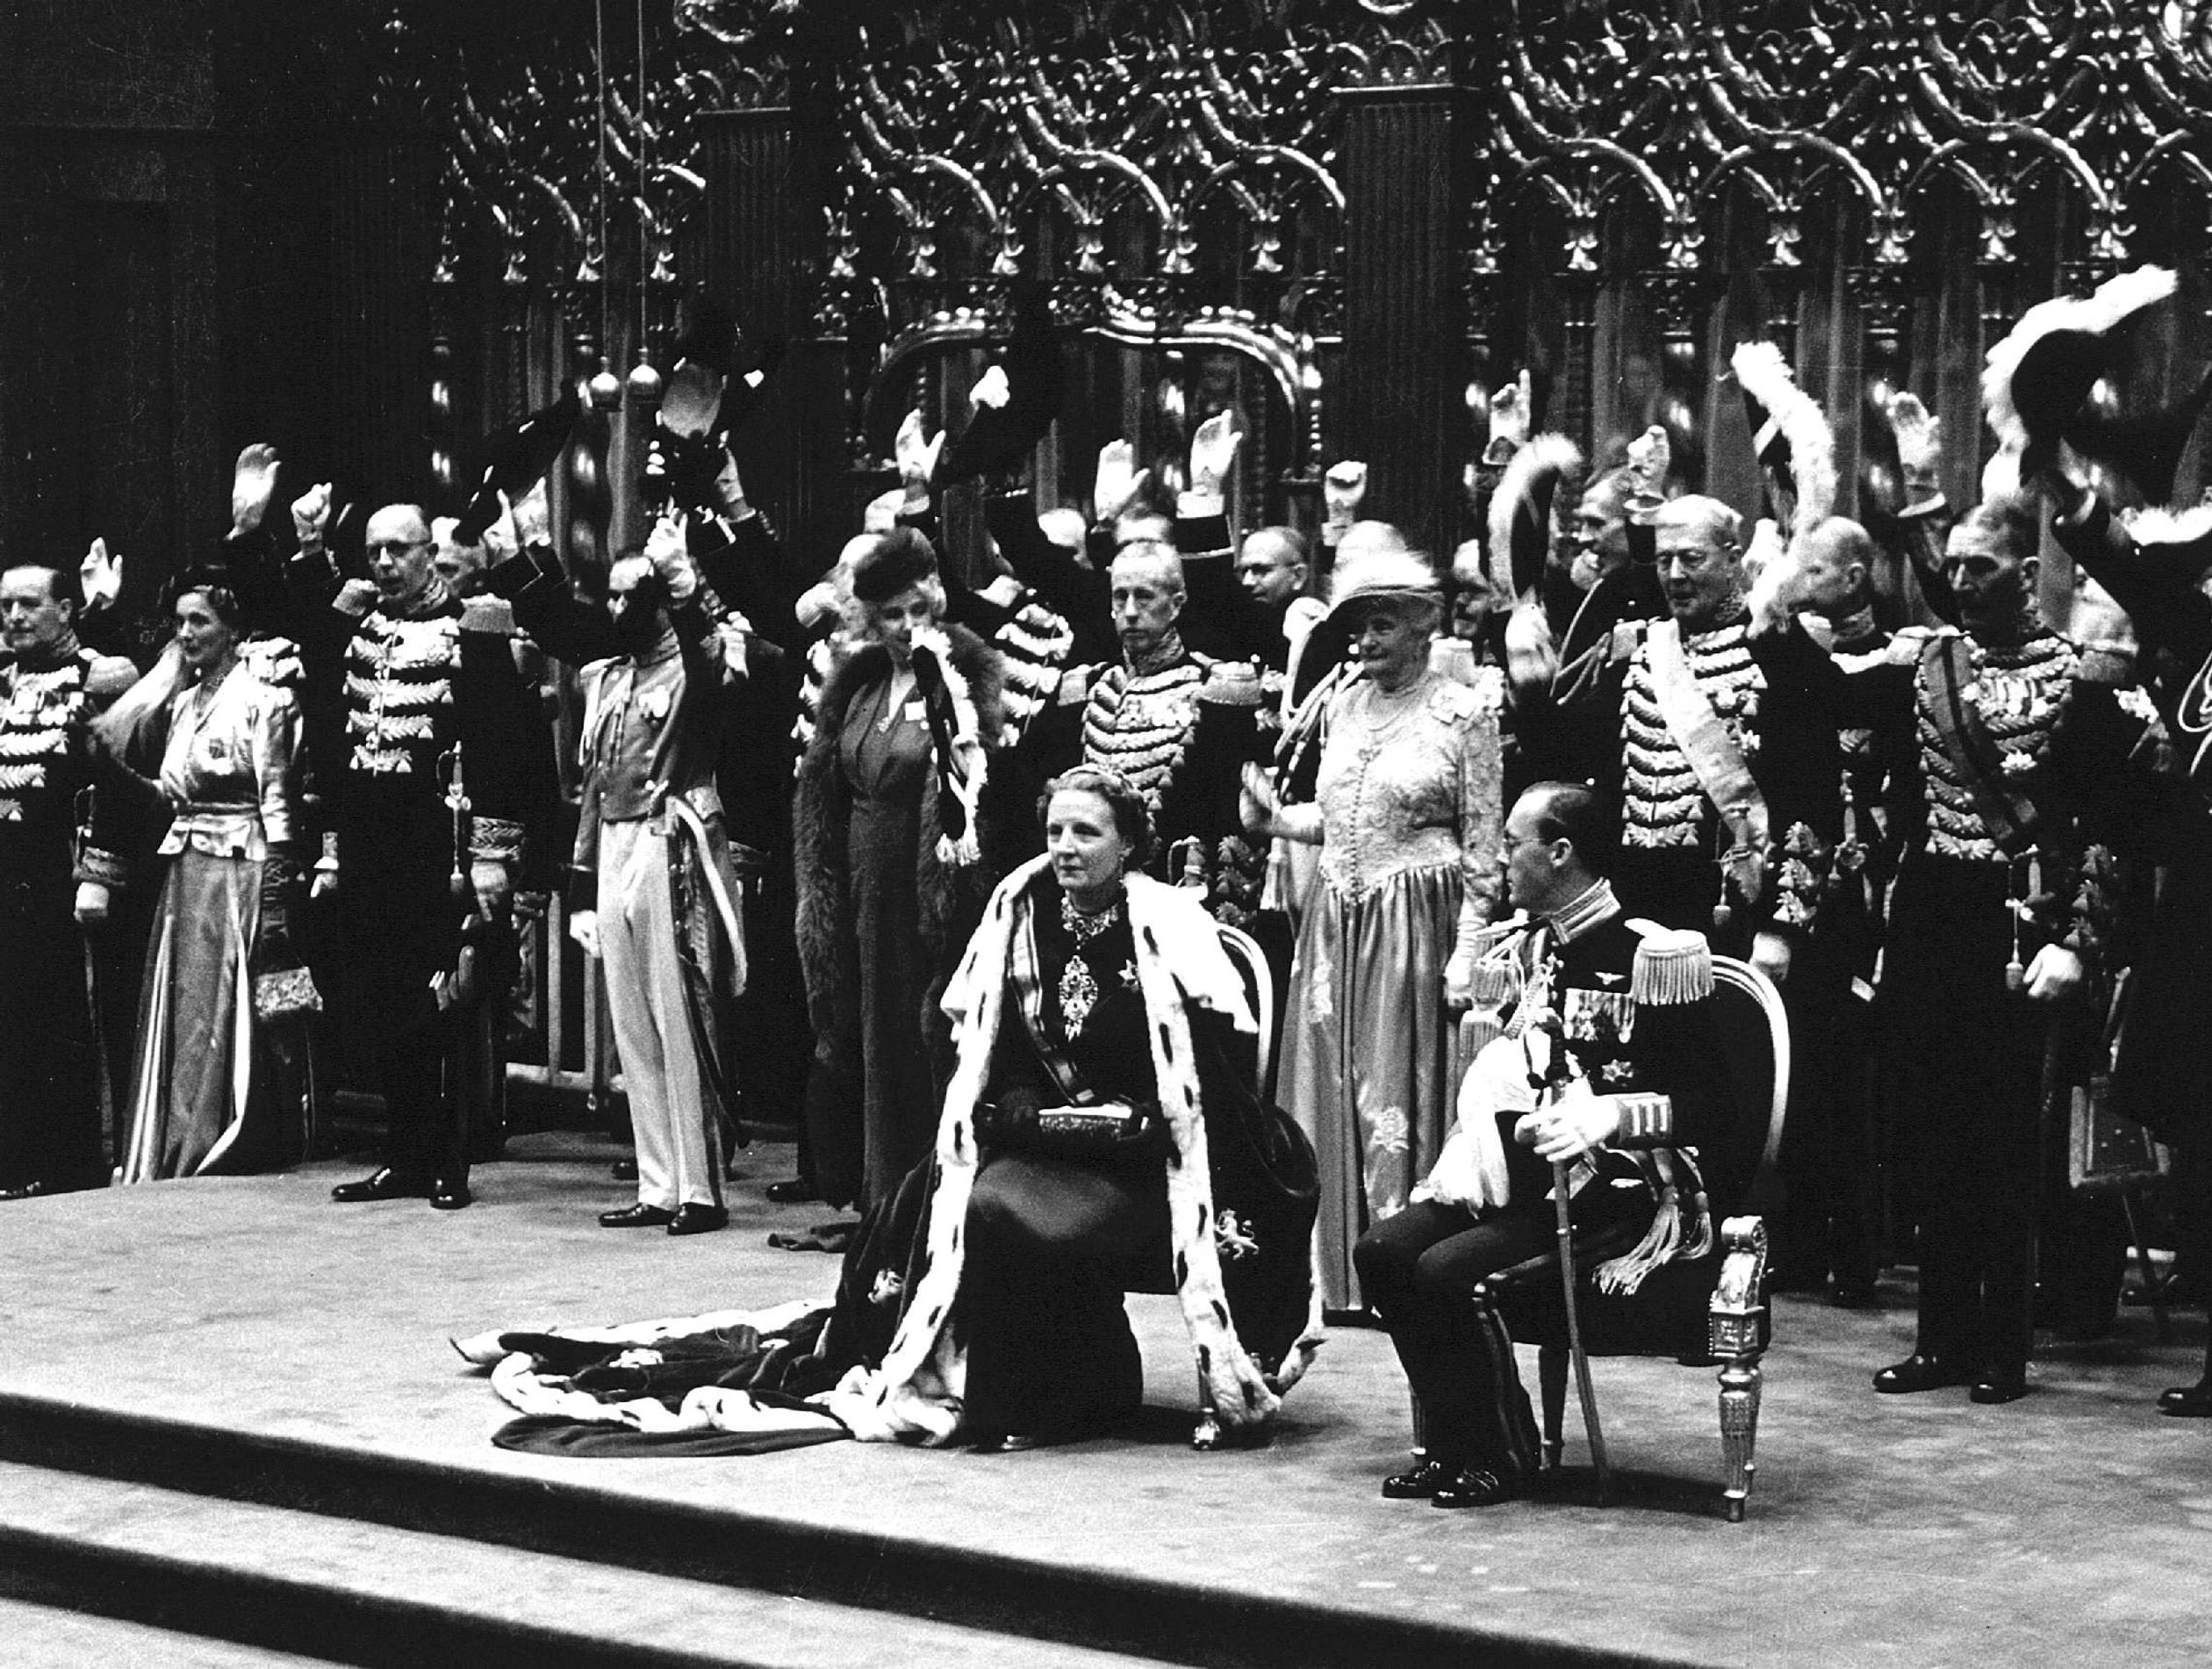 De inhuldiging van koningin Juliana vindt twee dagen later, op 6 september 1948, plaats in De Nieuwe